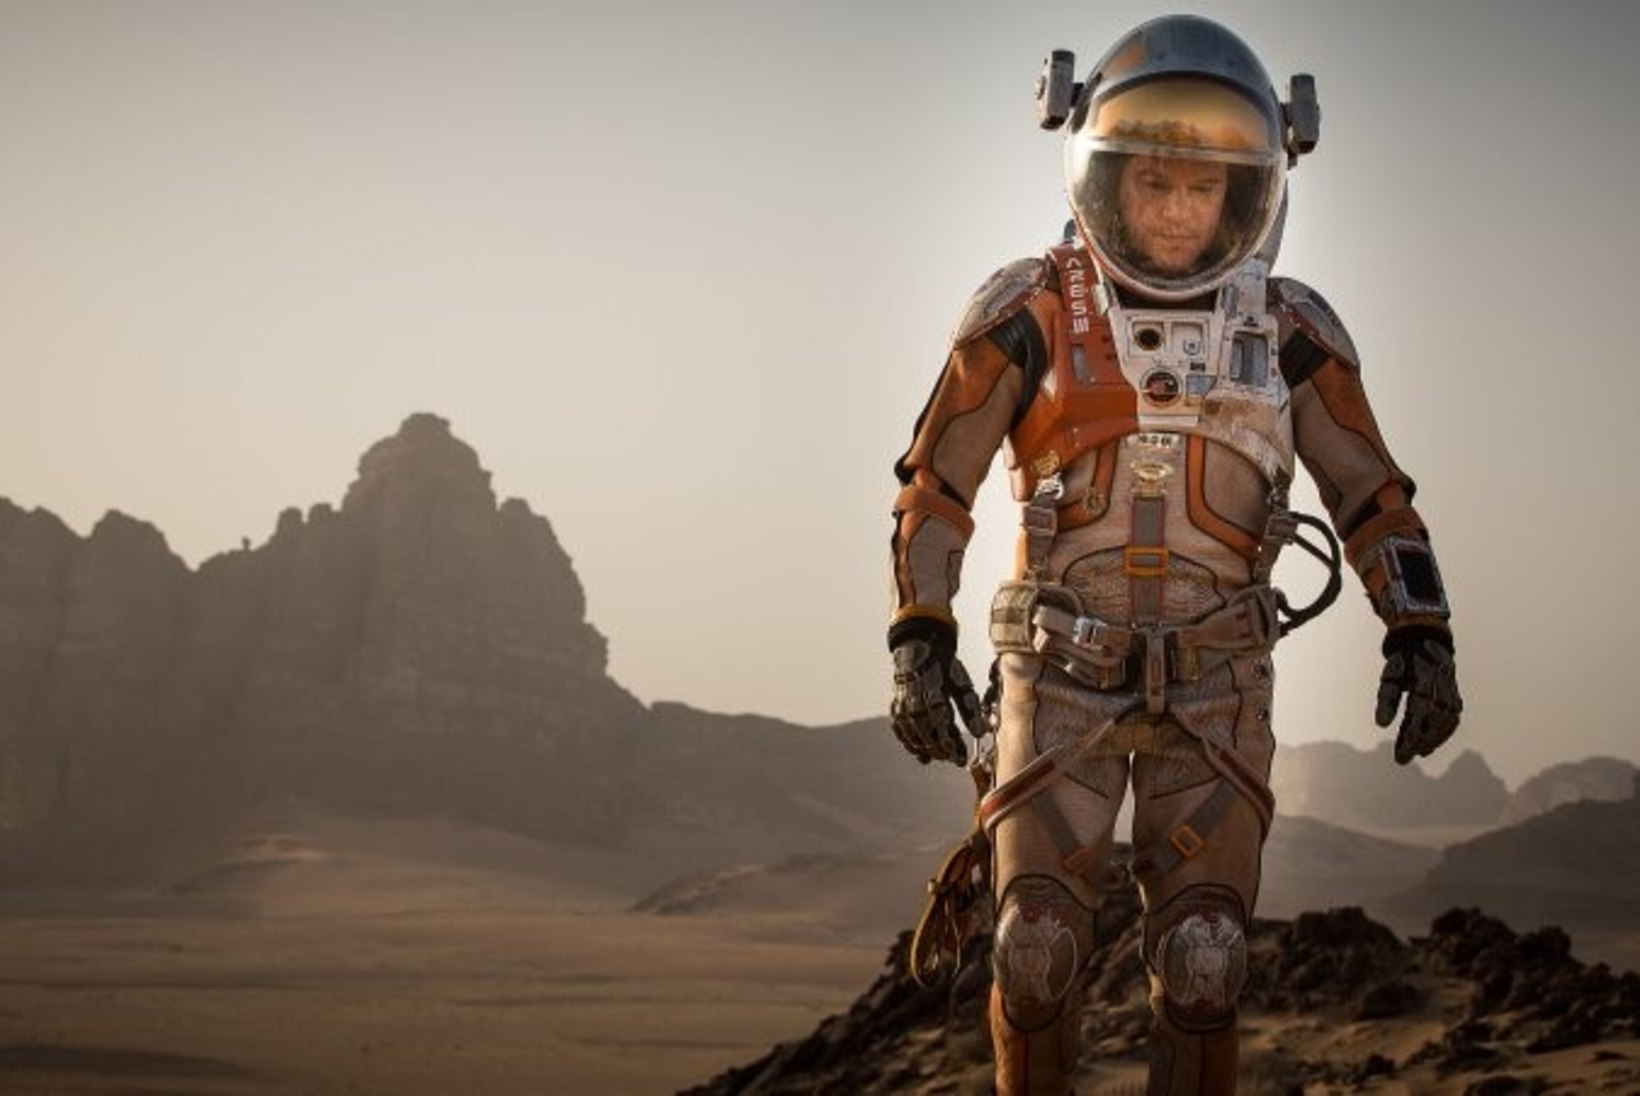 5 fakti, mida peaksid teadma enne fantaasiafilmi „Marslane“ teleesilinastust